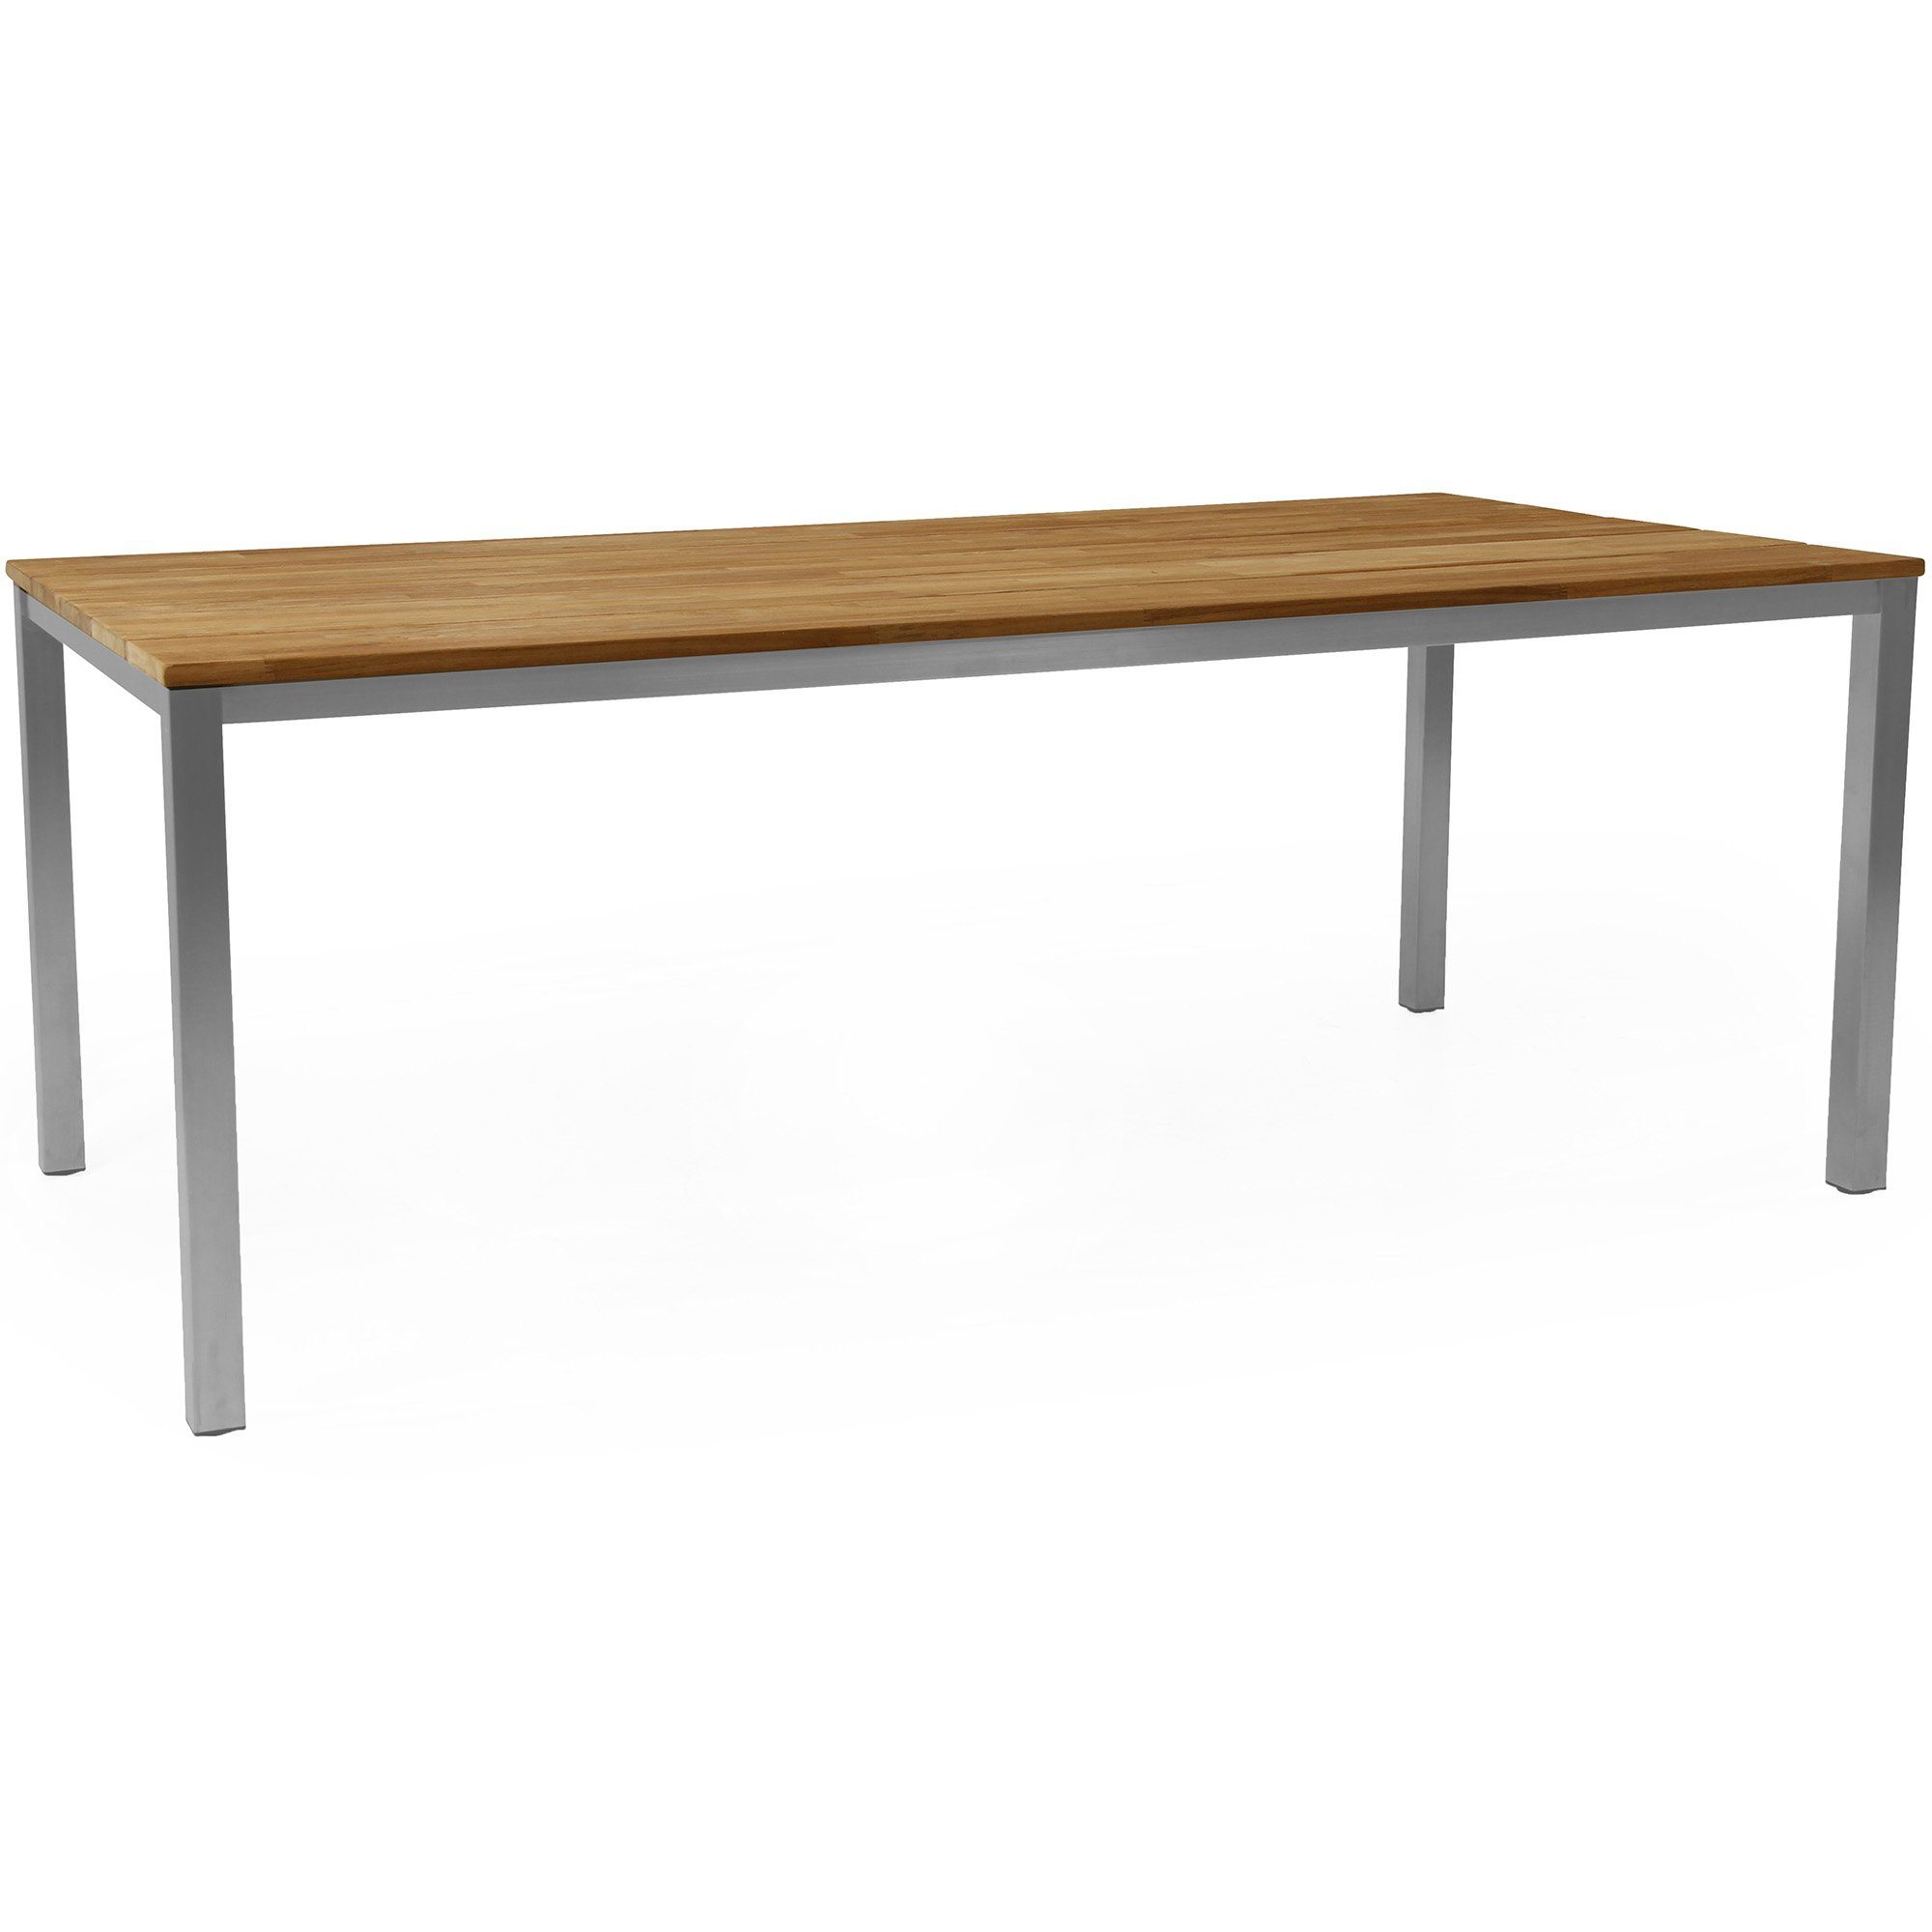 Hinton matbord från Brafab tillverkat i rostfritt stål med en bordsskiva i teak.